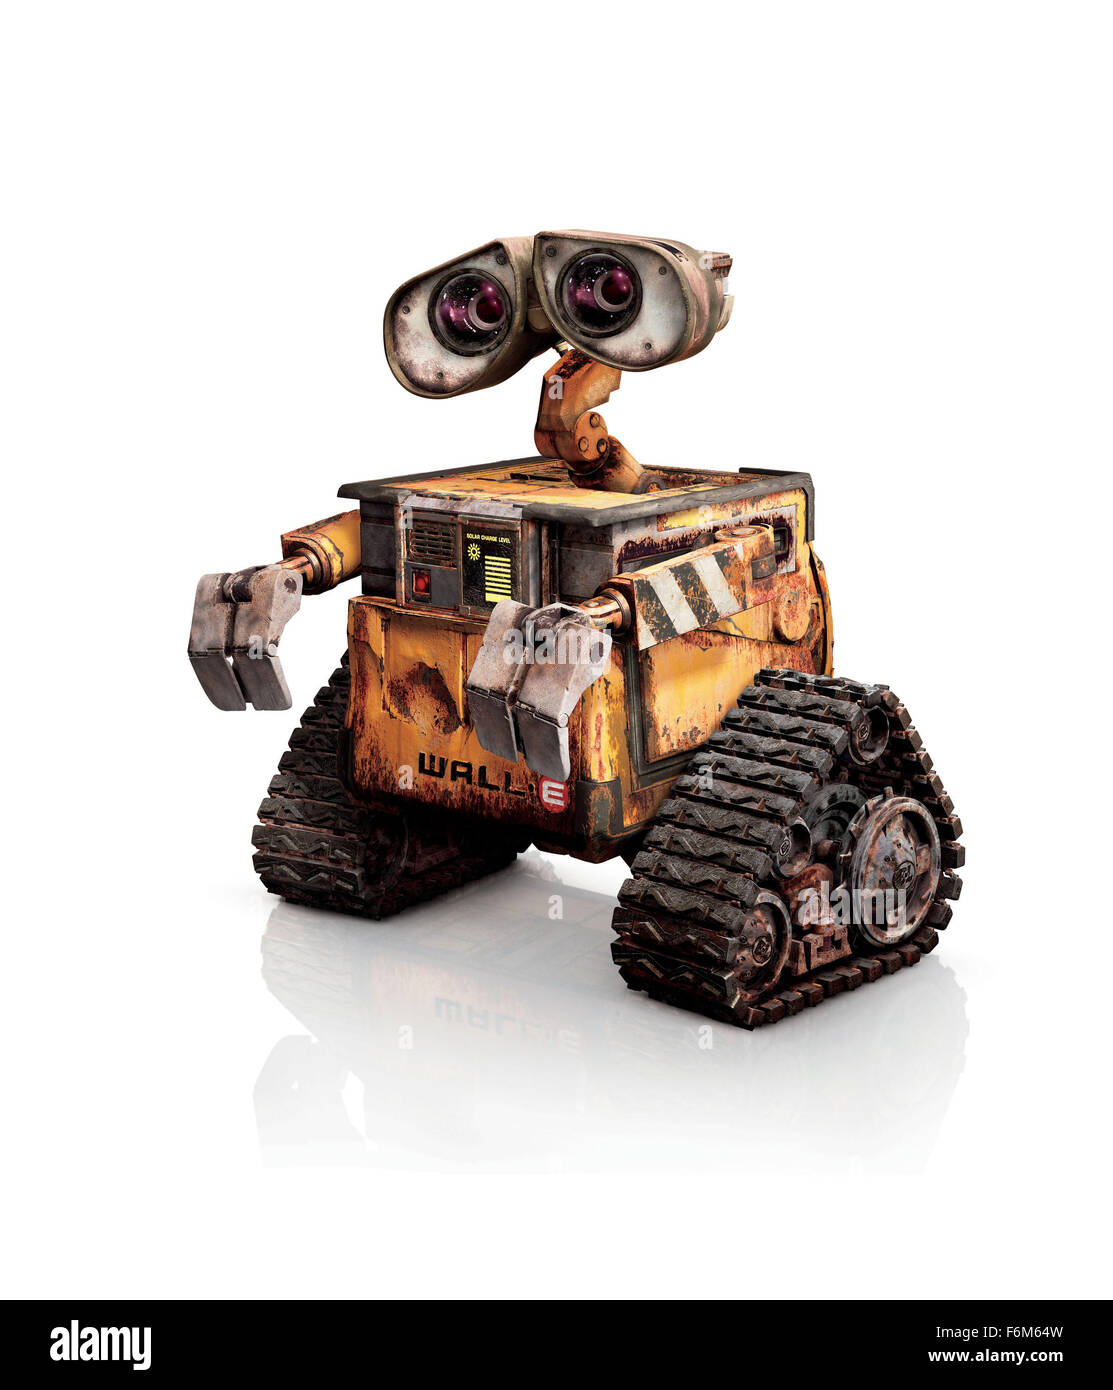 Wall · e le robot titre du film wall · e Banque d'images détourées - Alamy